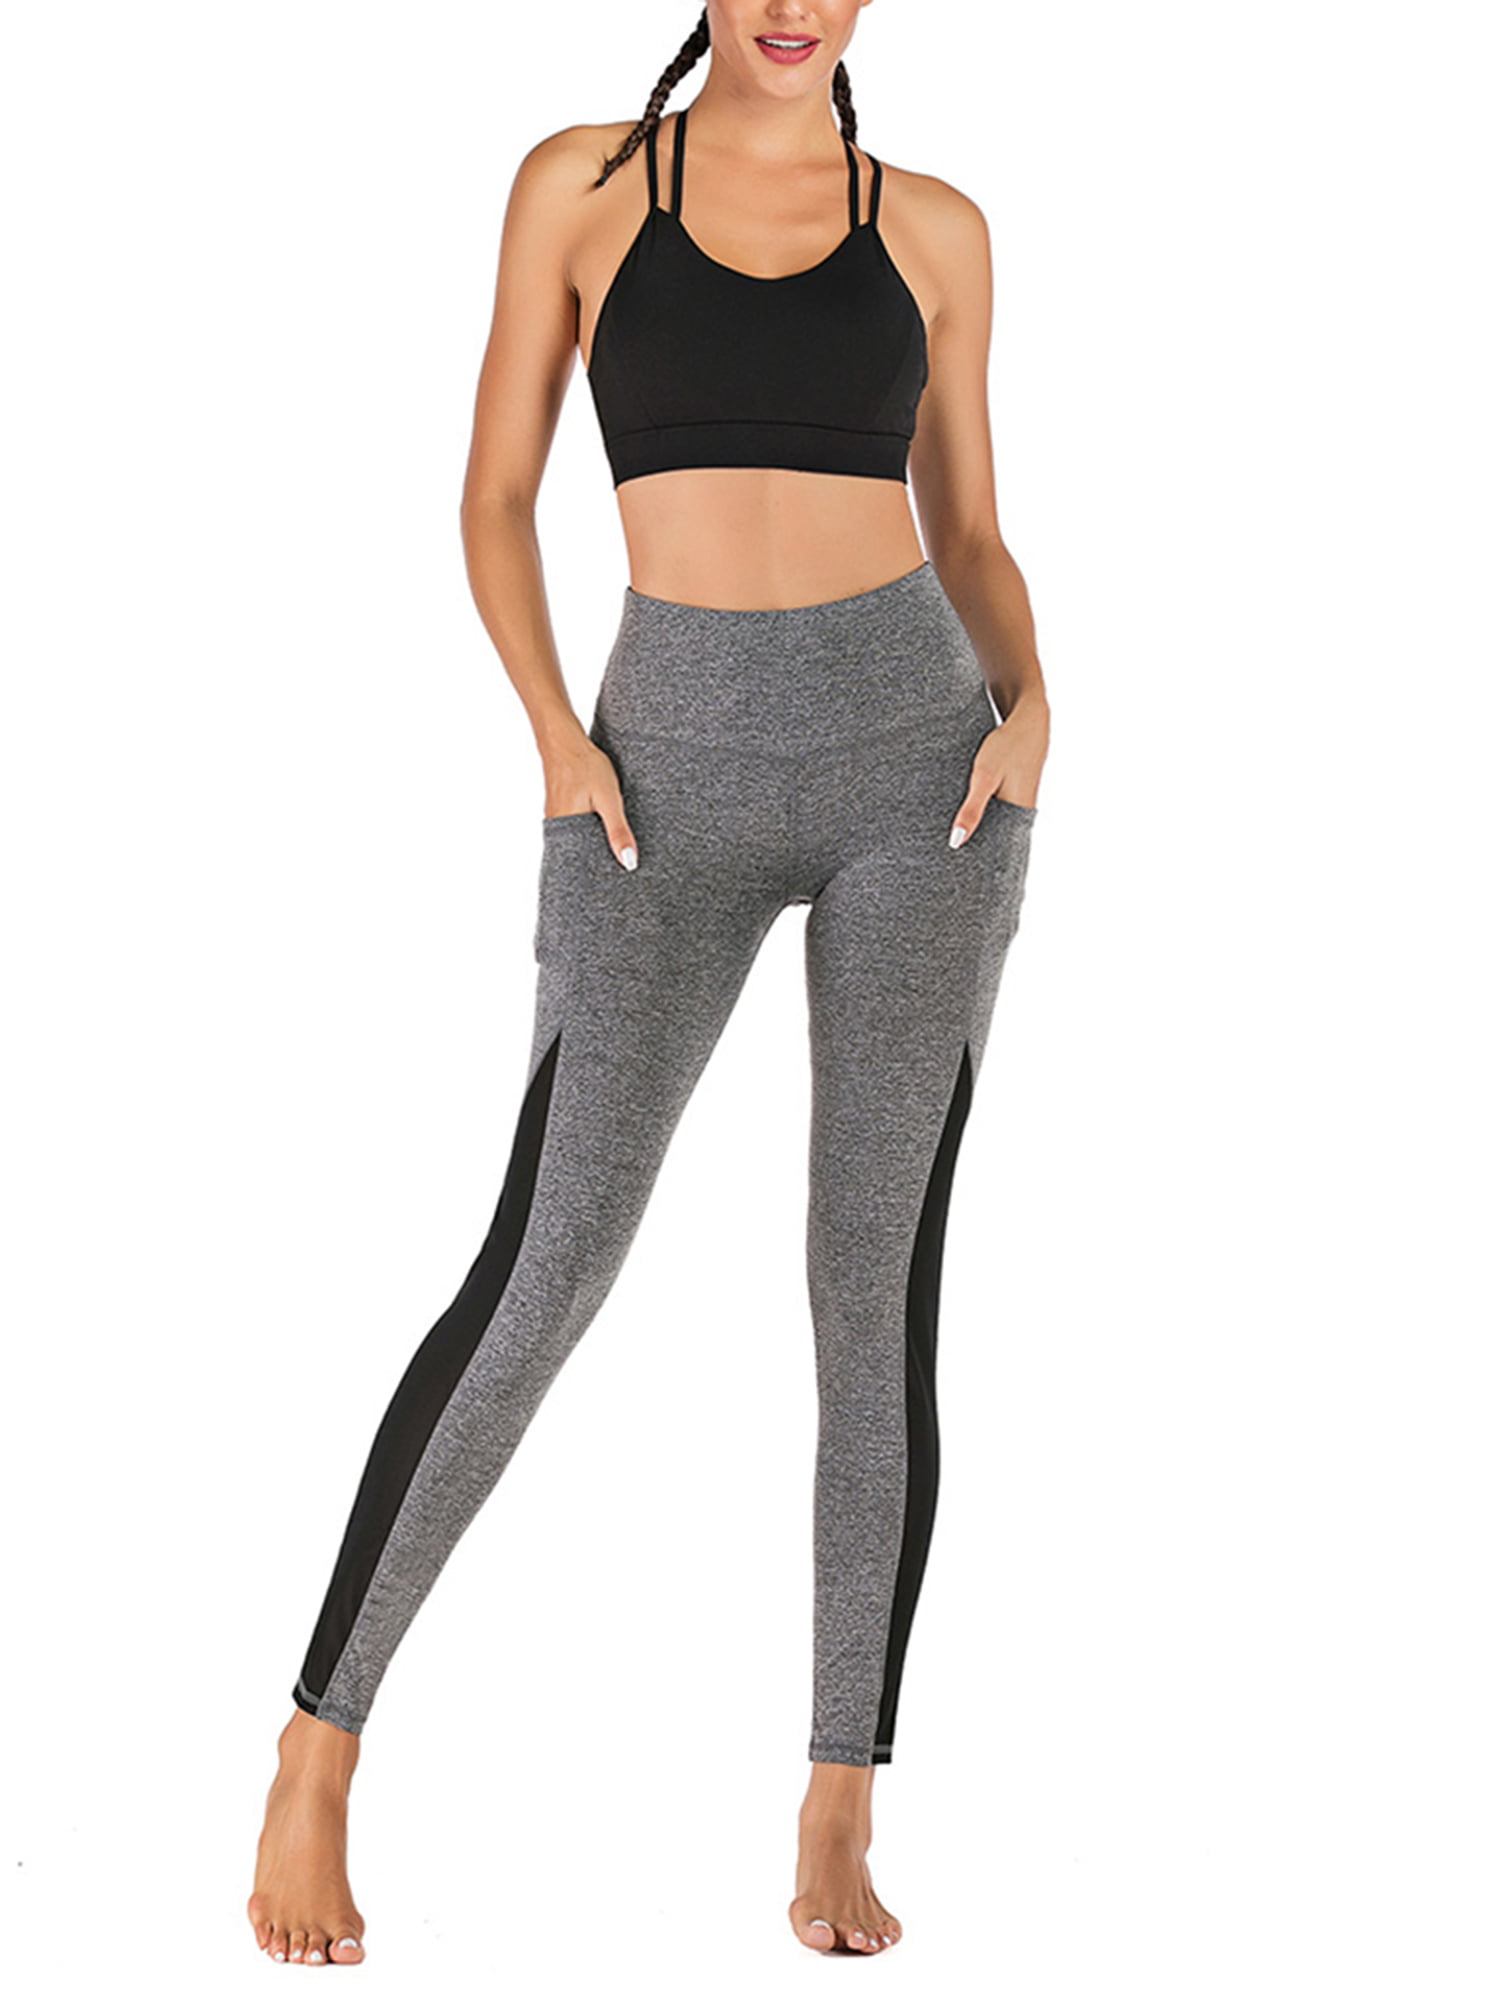 Women Capri Cropped Leggings Yoga Pants for Gym Fitness Workout Wear S M L XL